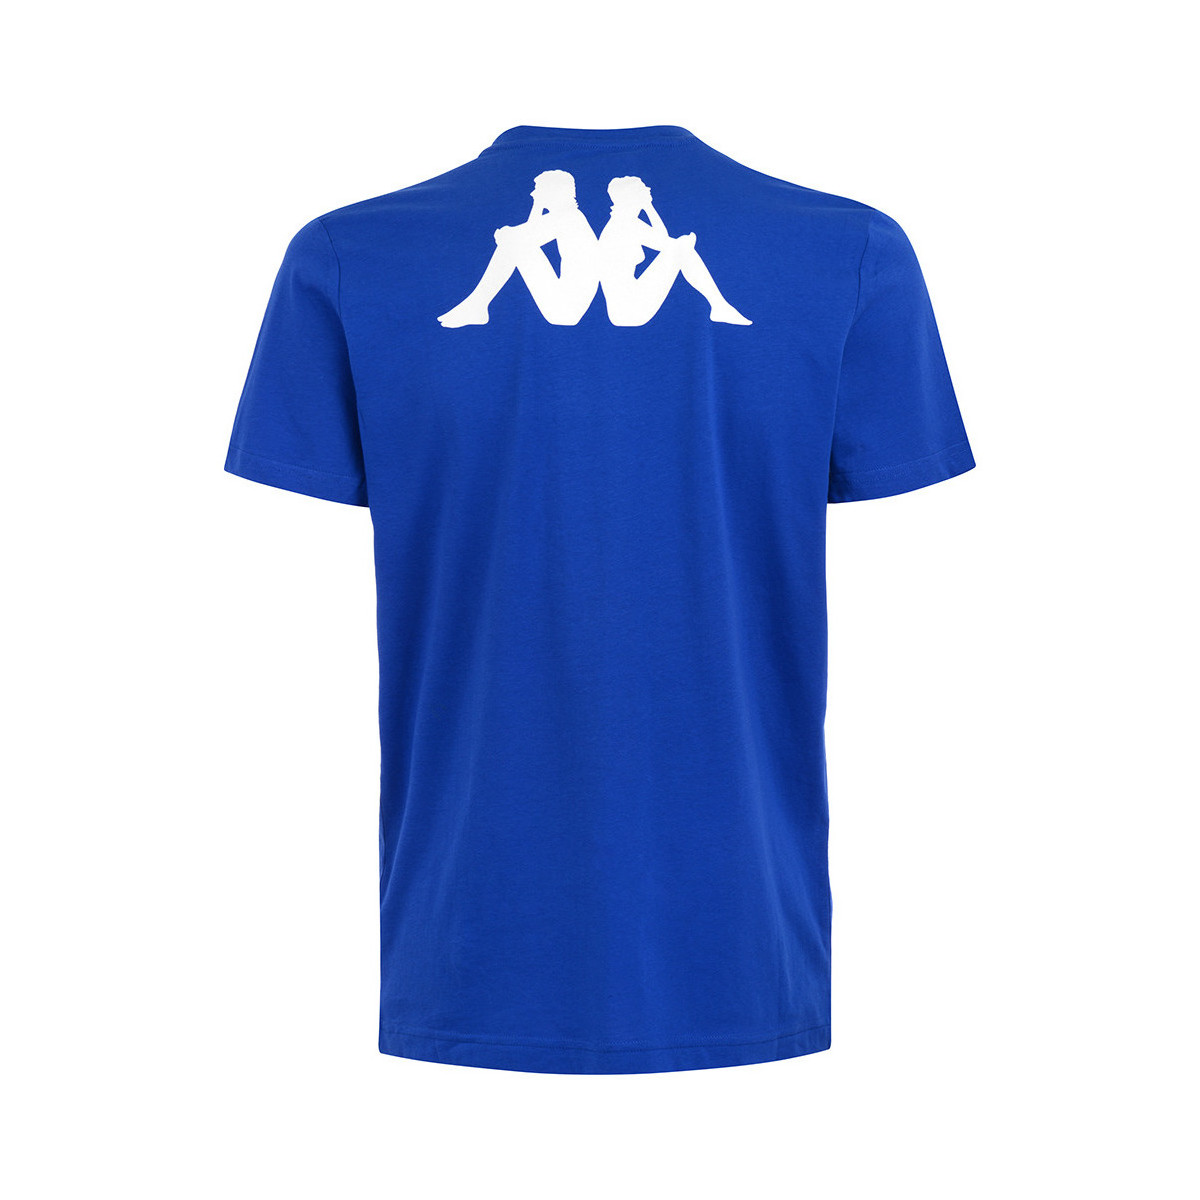 Kappa Bleu T-shirt Tee rHMtcEzq